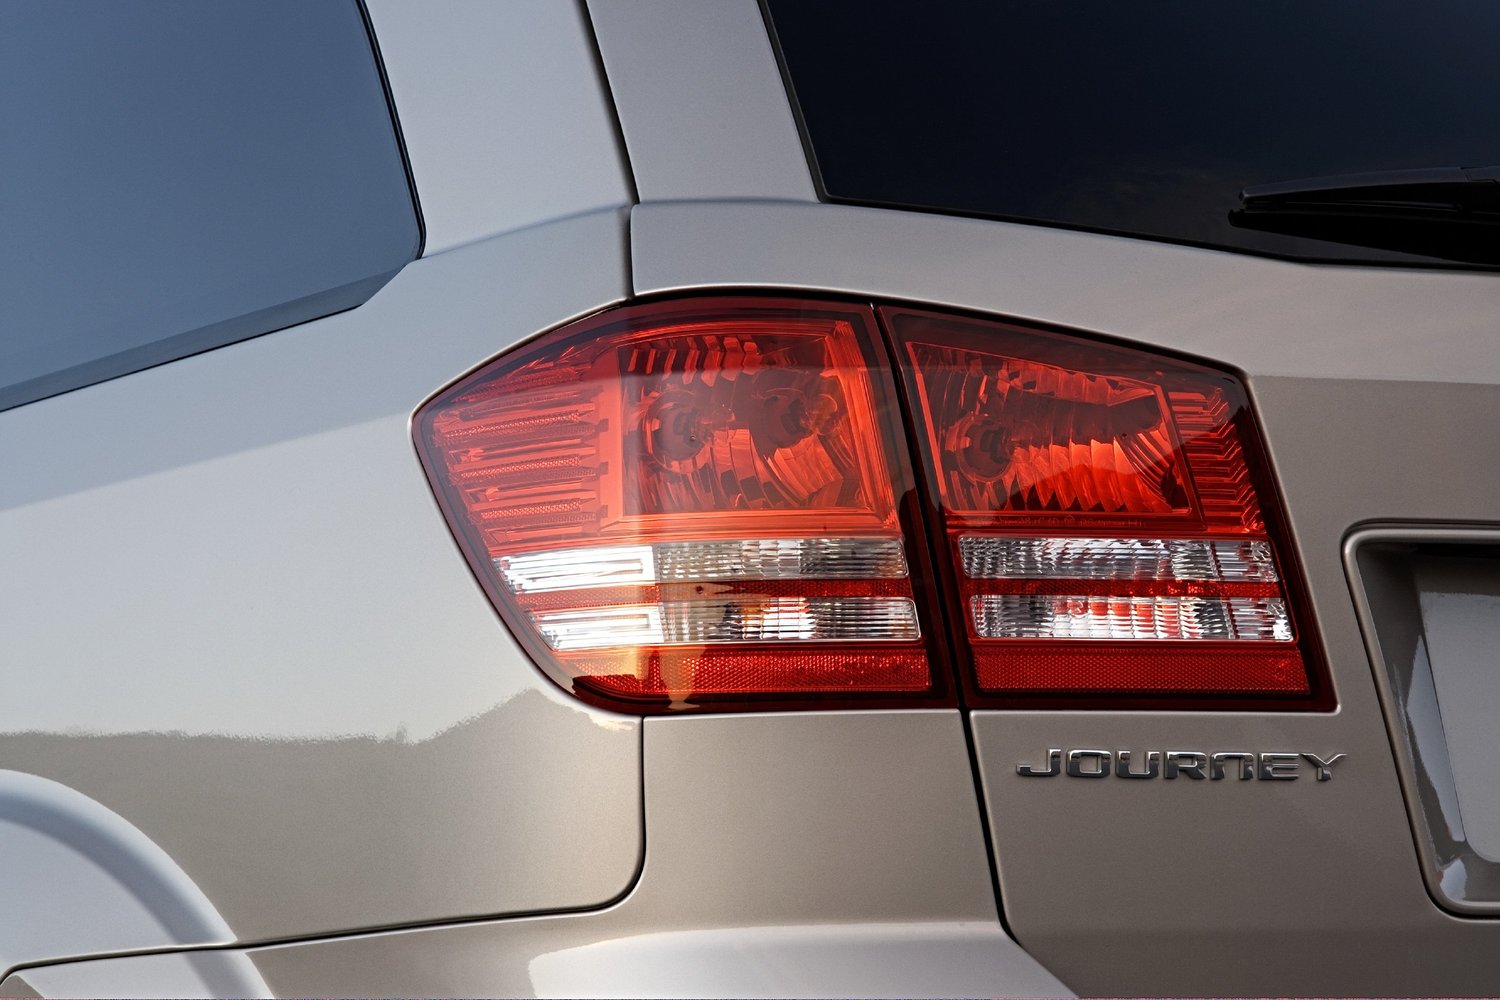 кроссовер Dodge Journey 2008 - 2016г выпуска модификация 2.0 AT (140 л.с.)